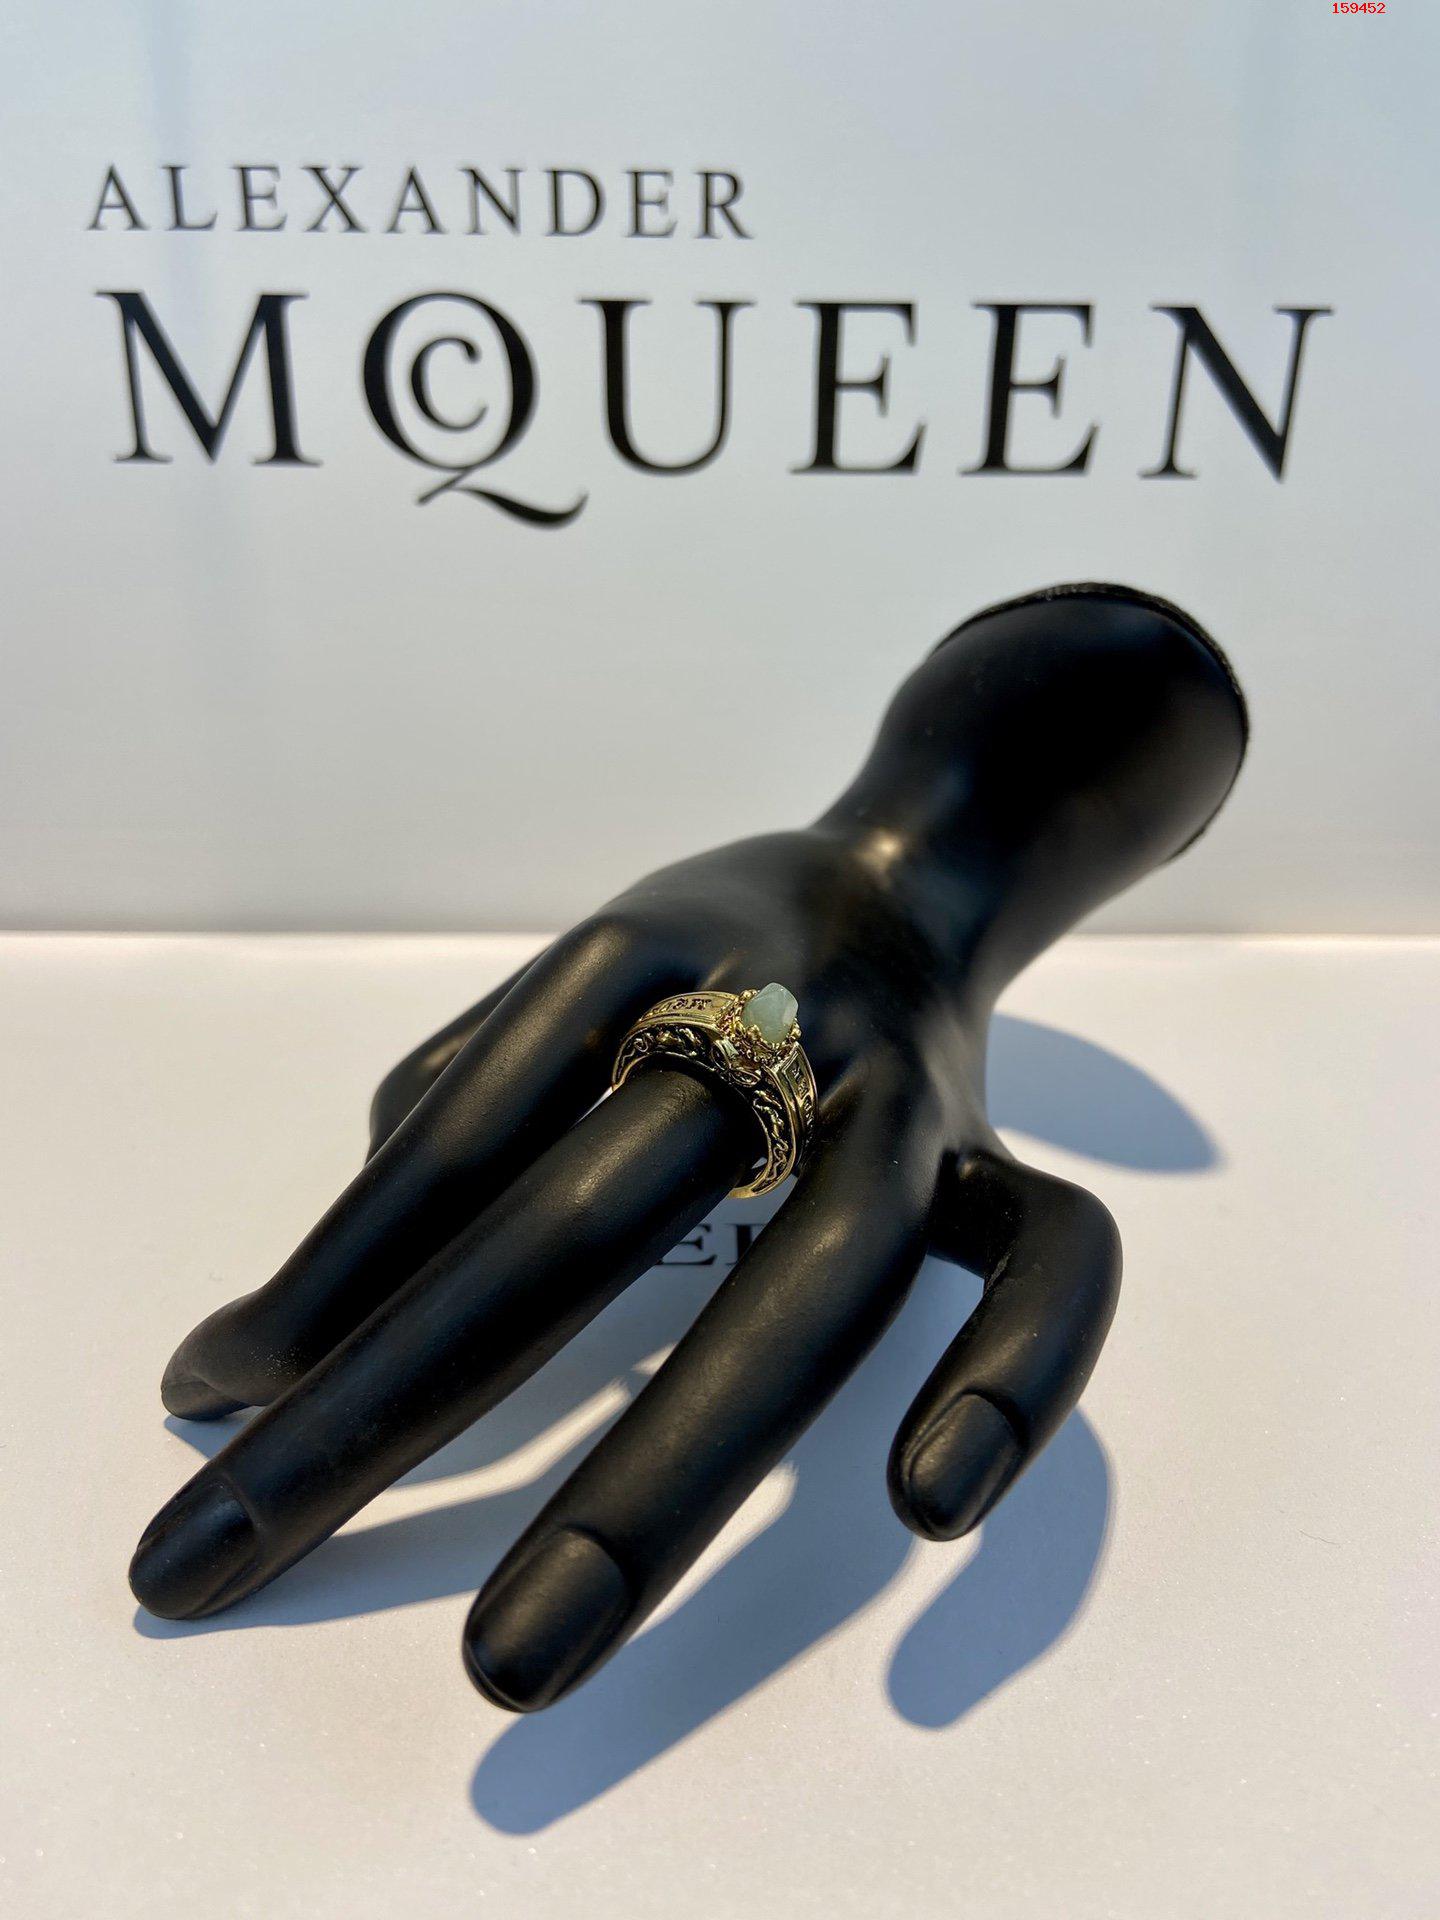 AlexanderMcQueen原版定 高仿名牌戒指 精仿名牌戒指 原版名牌戒指 A货名牌戒指 原单名牌戒指 